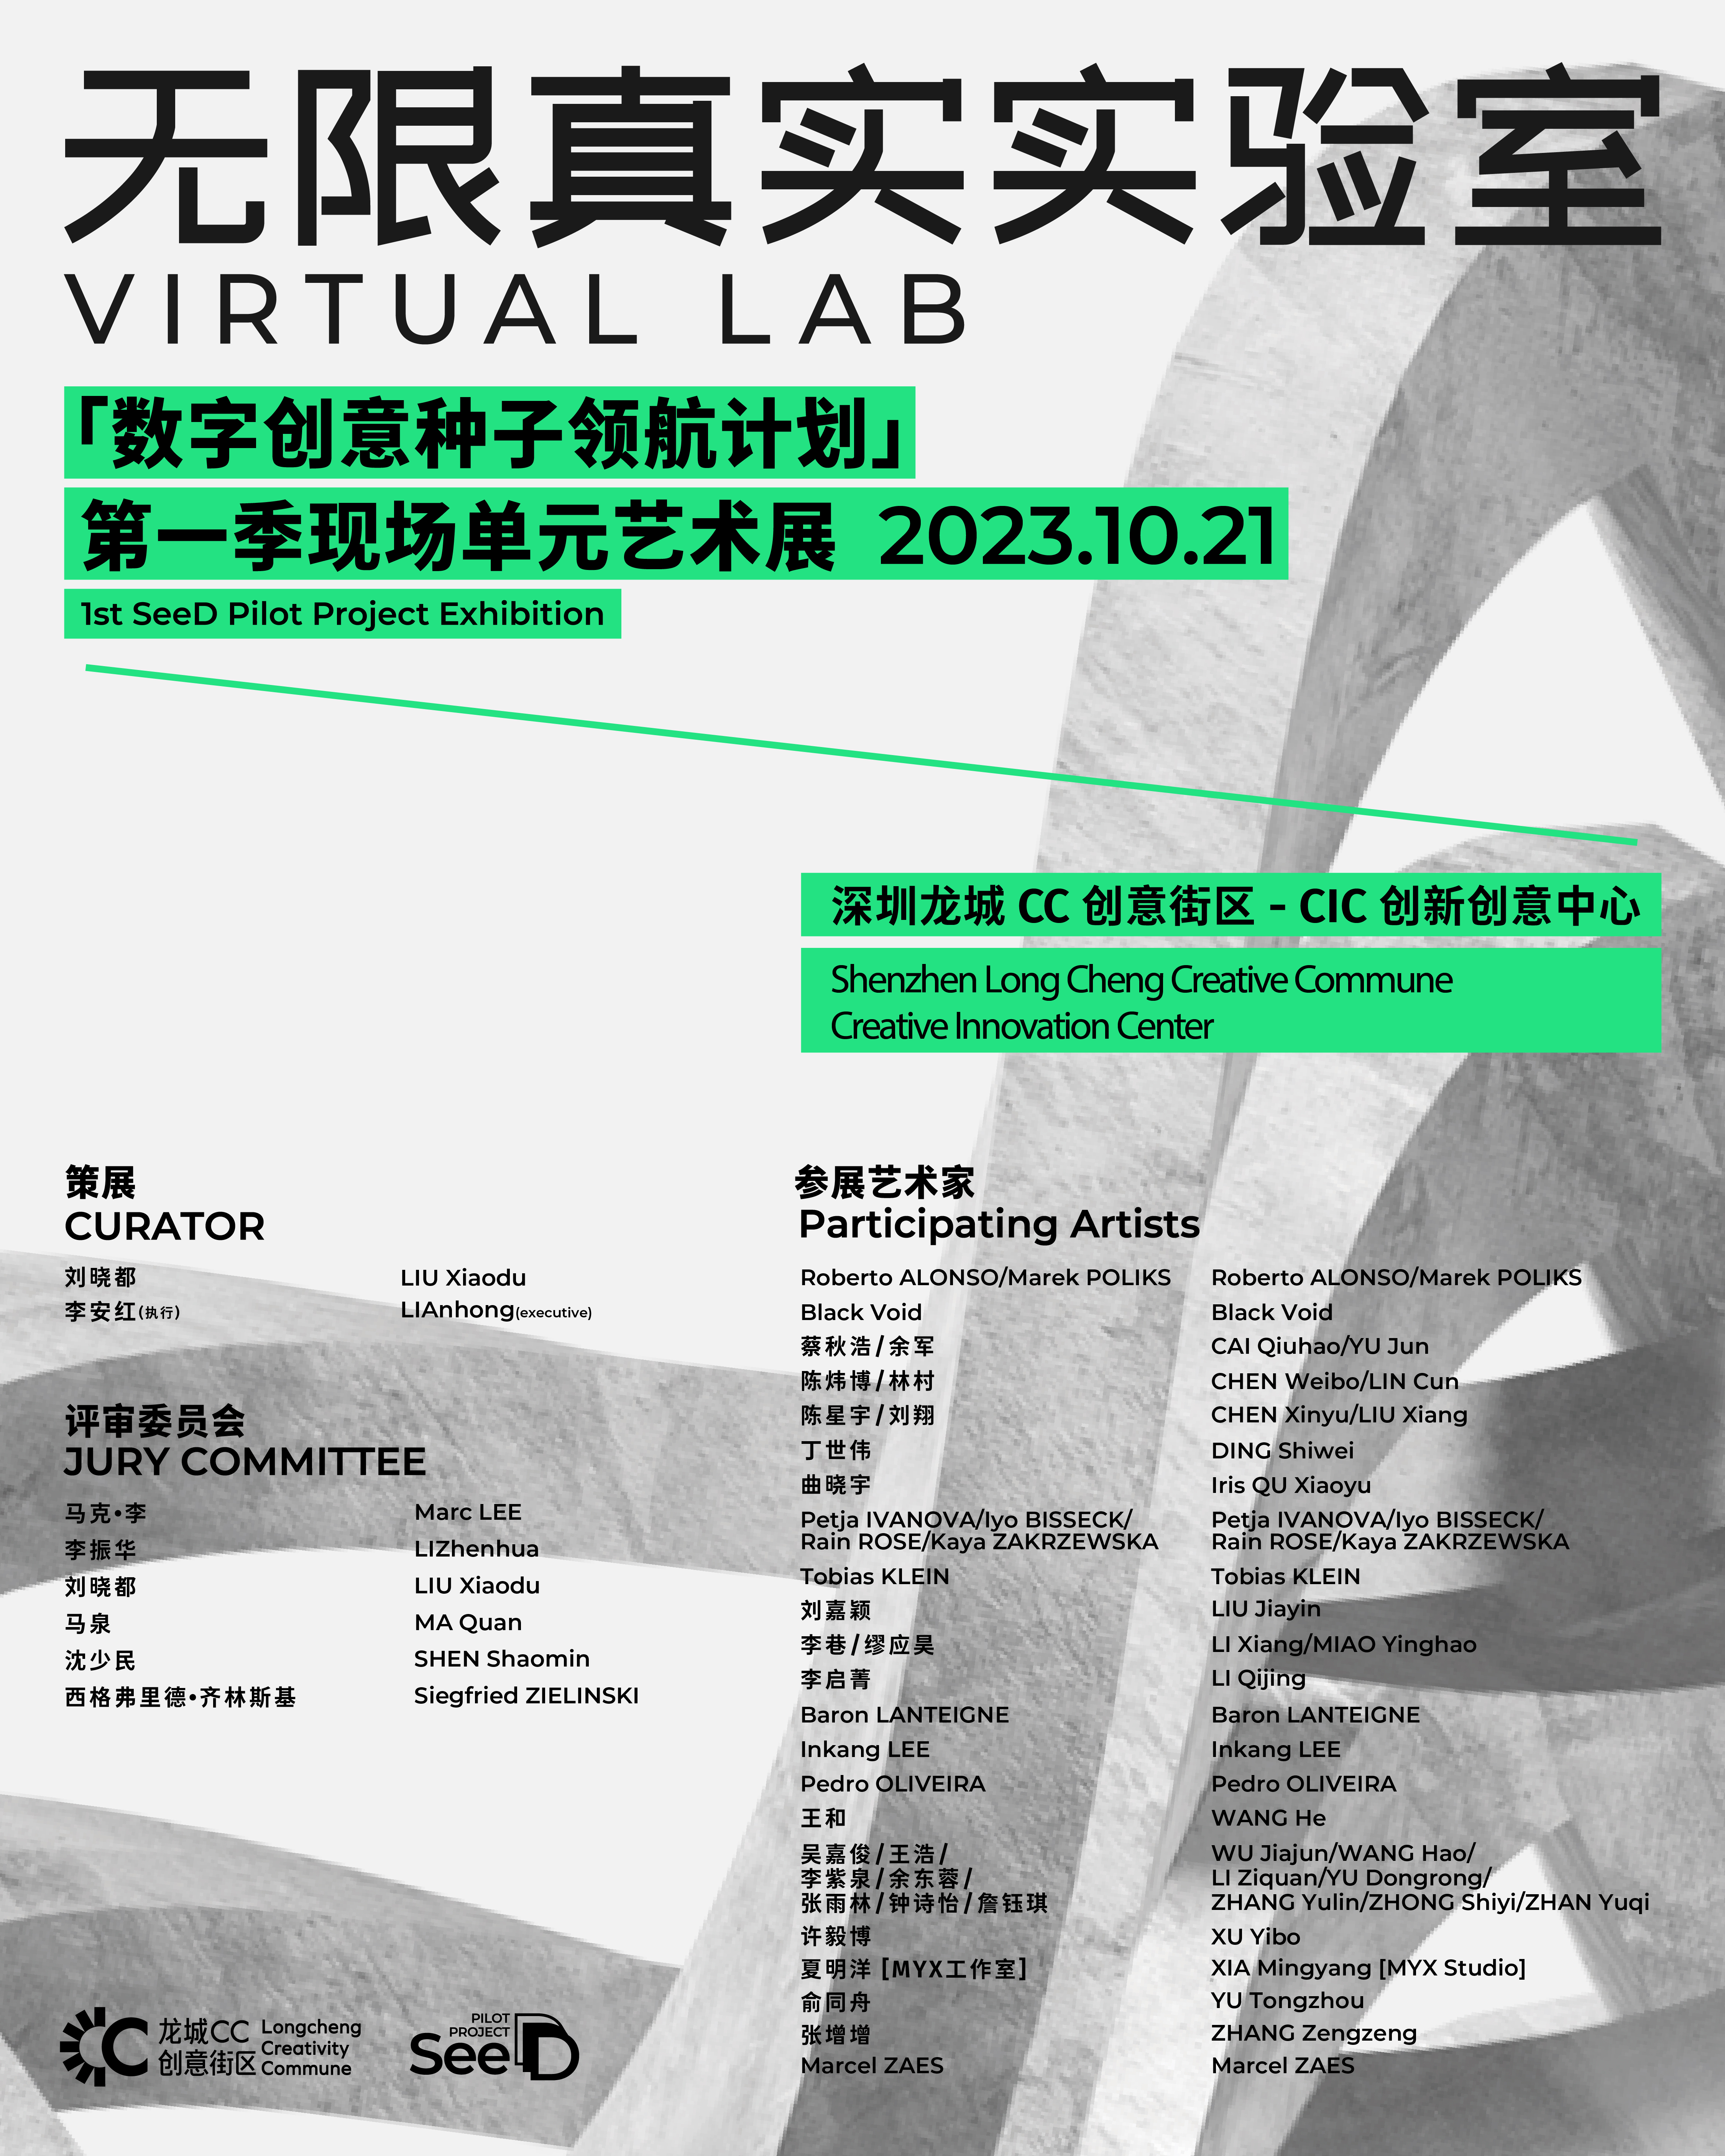 无限真实实验室 VIRTUAL LAB “数字创意种子领航计划” 第一季现场单元艺术展